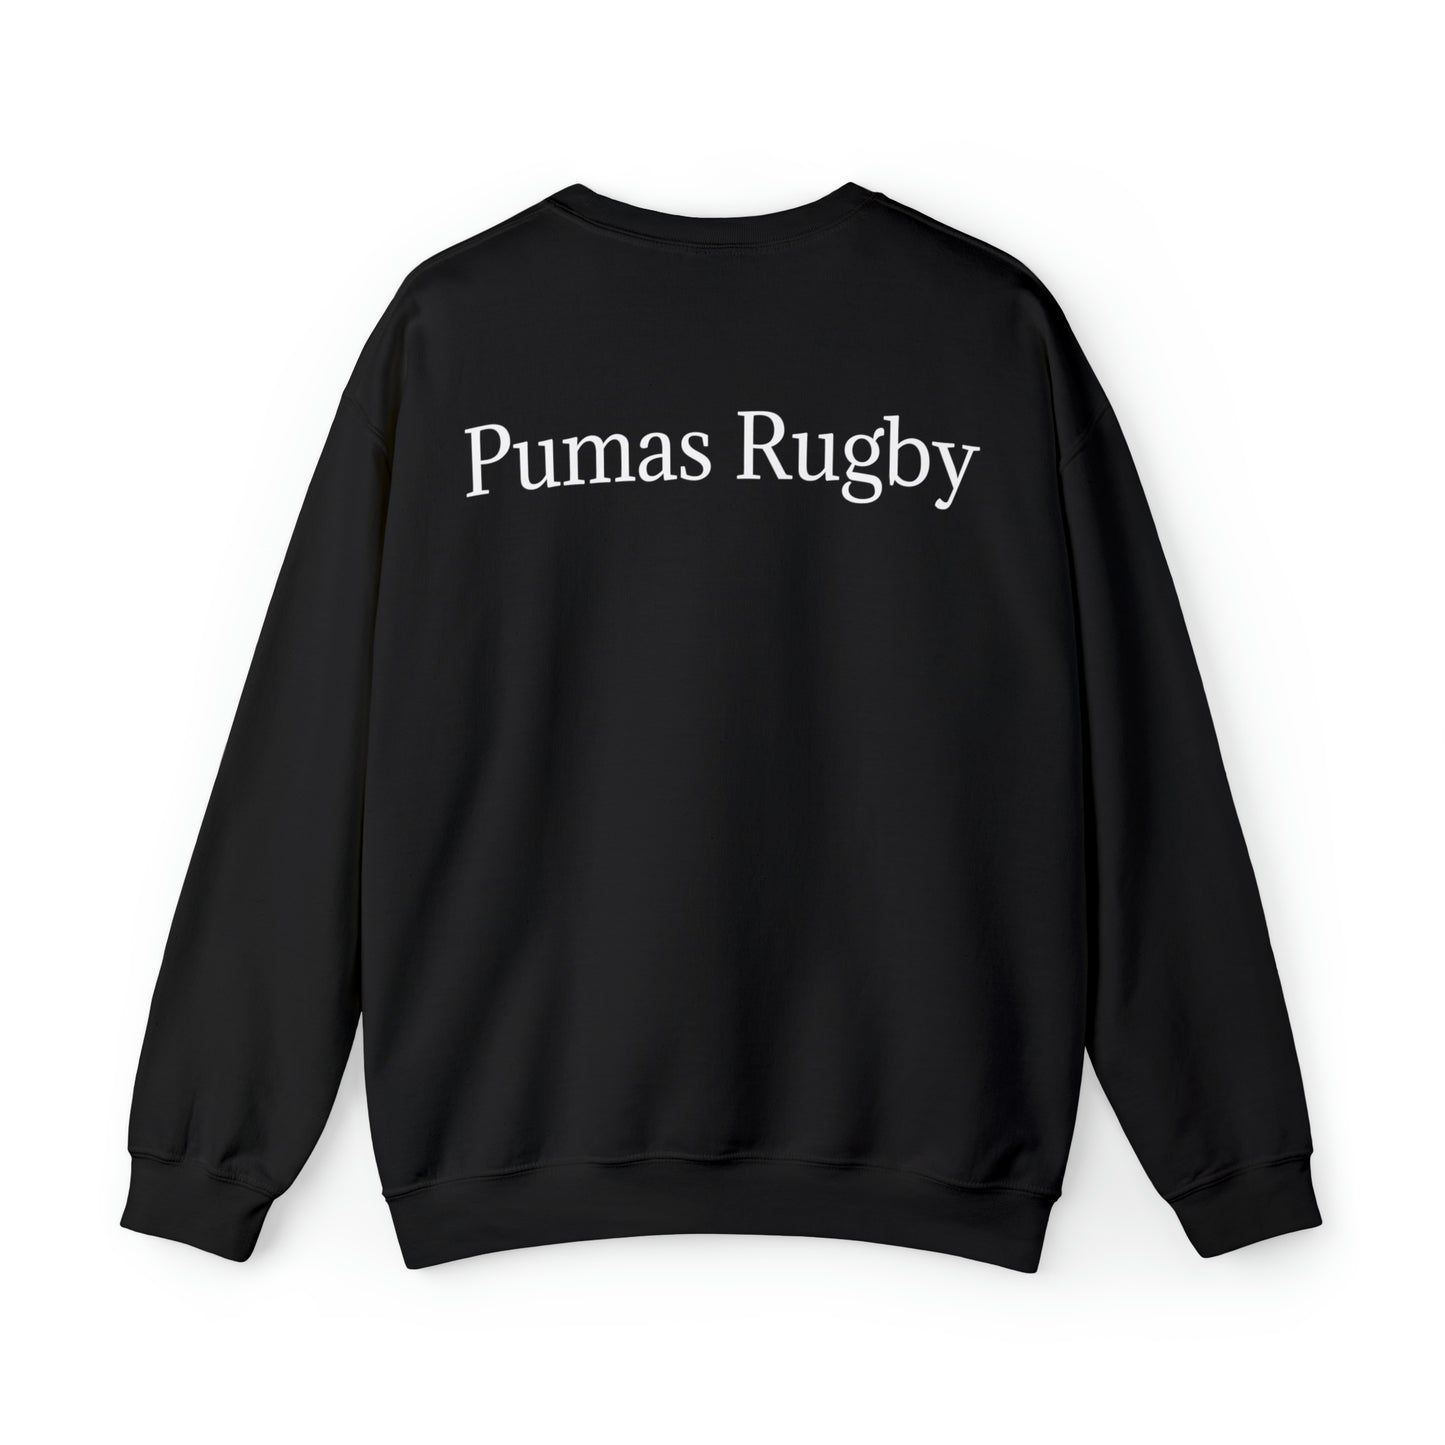 Ready Pumas - black sweatshirt